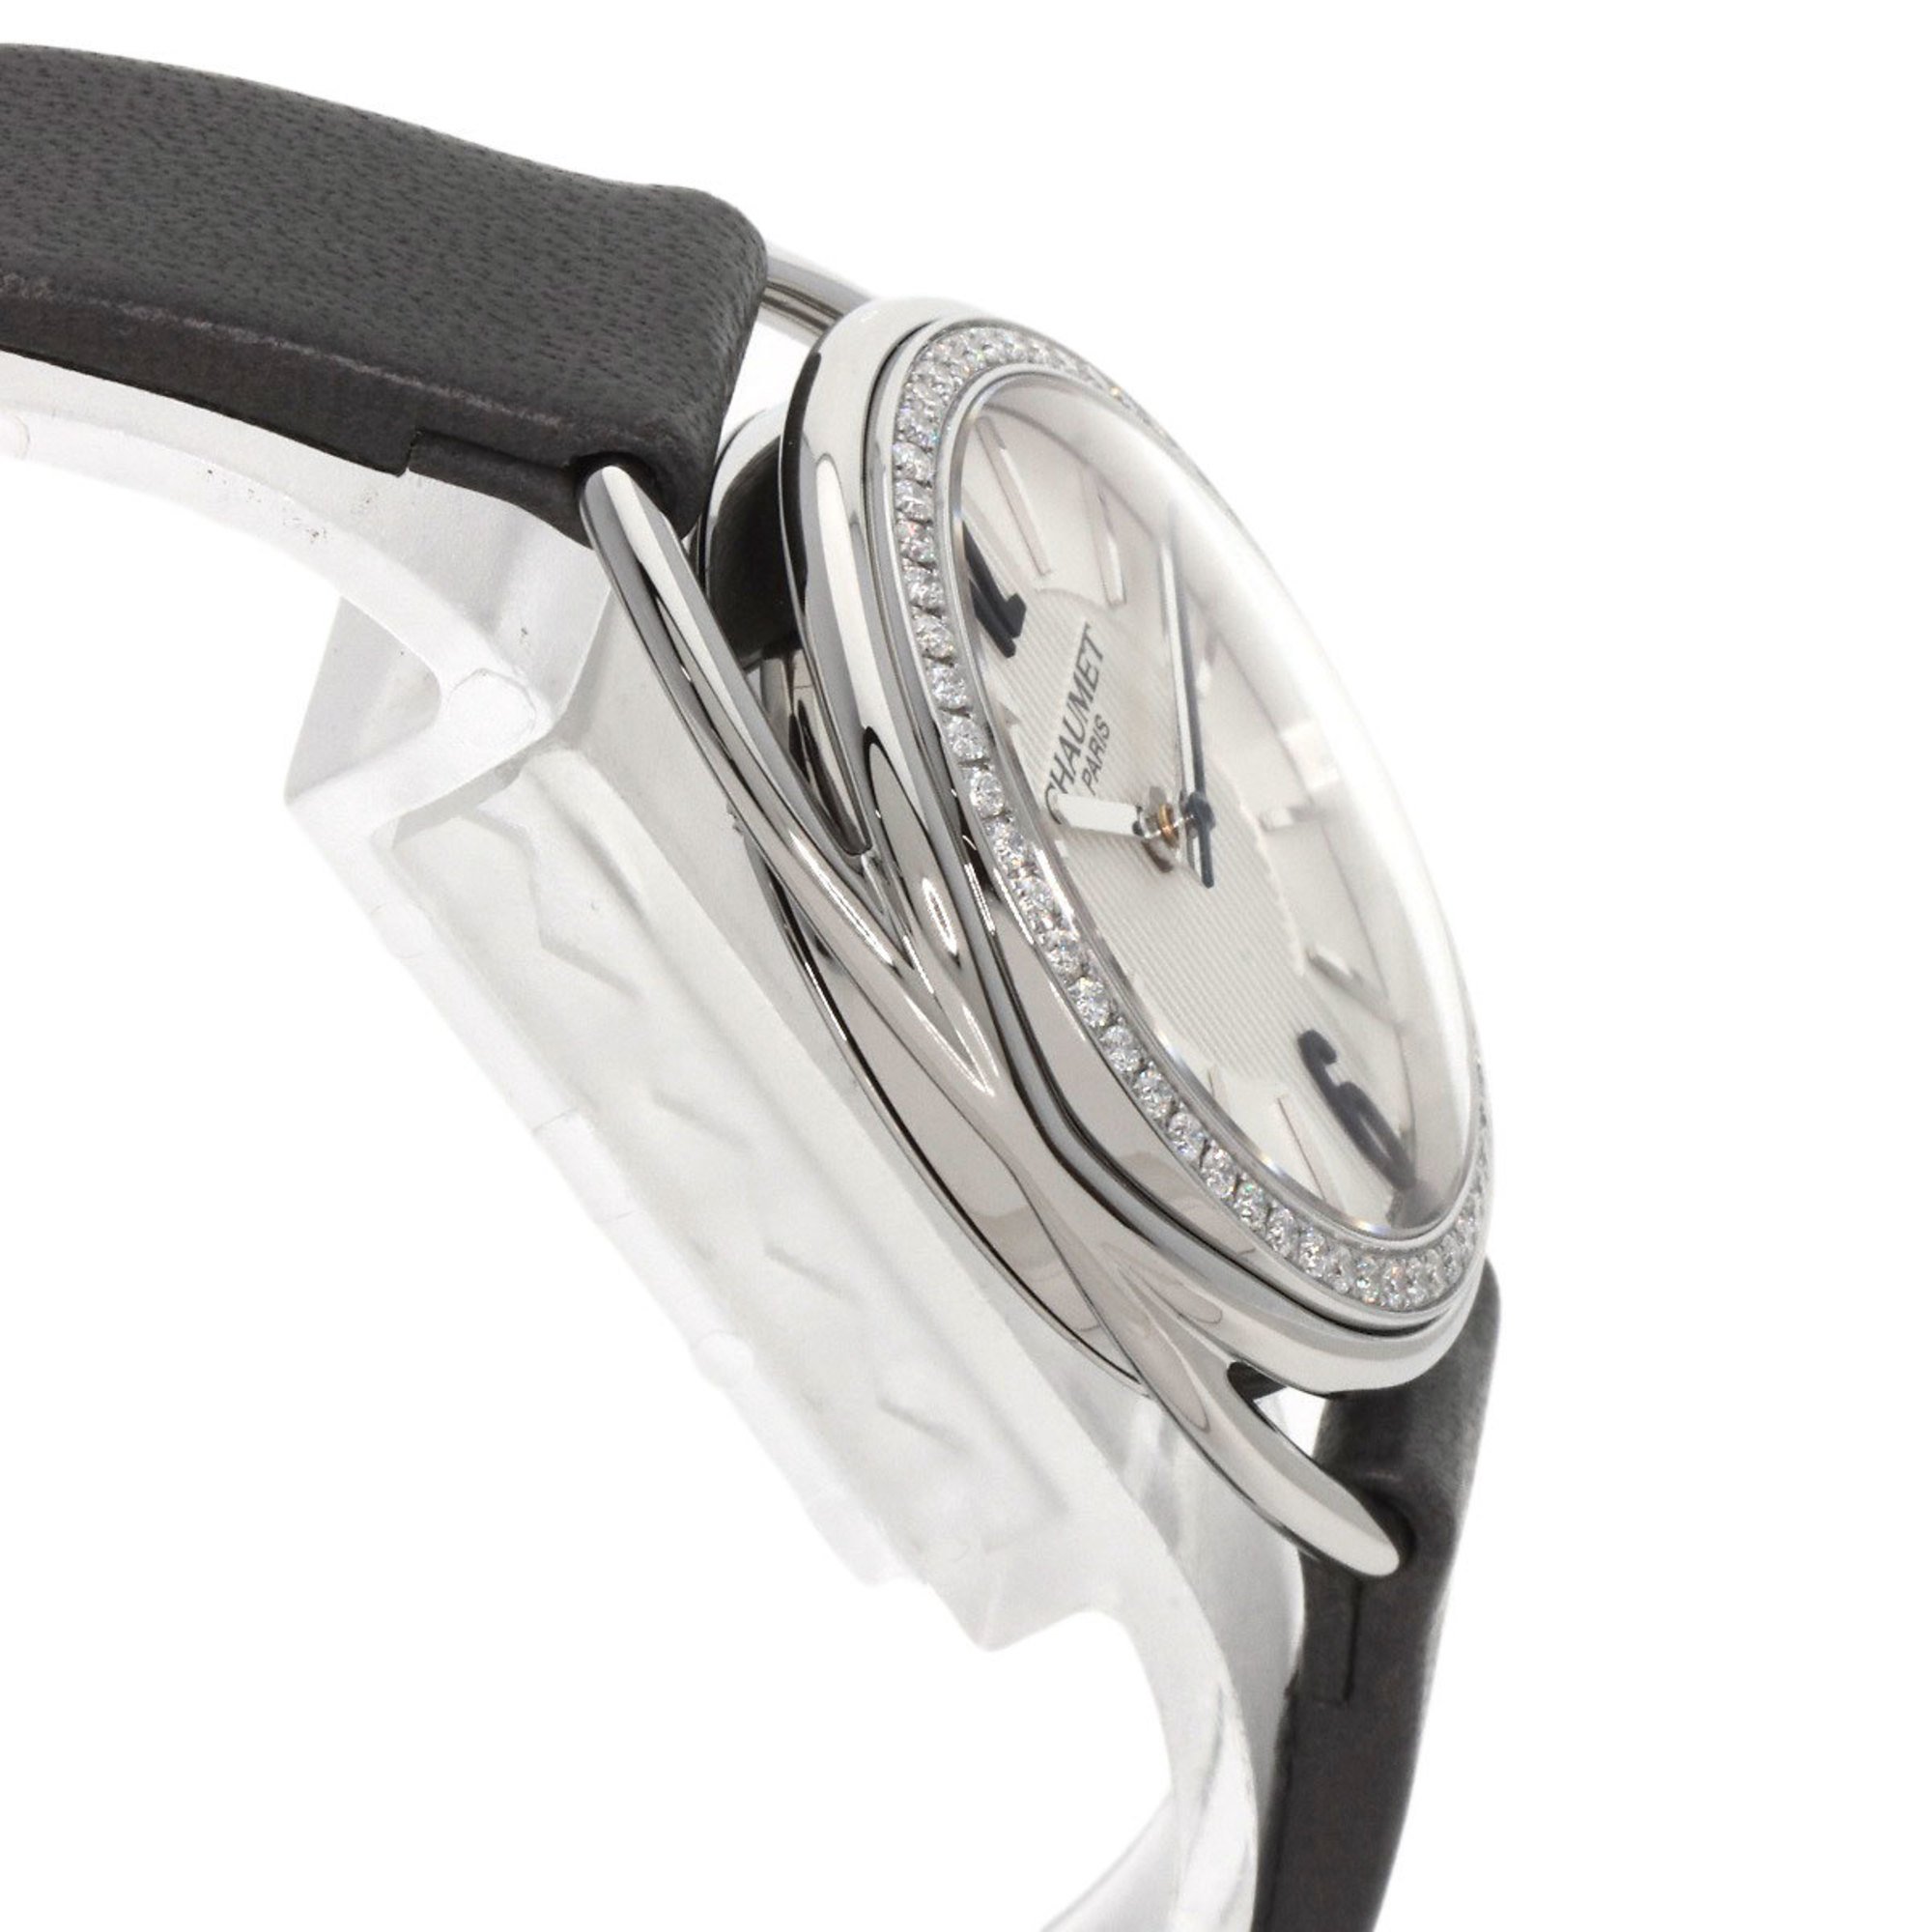 Chaumet W23211-01A Lien Diamond Bezel Watch Stainless Steel Leather Women's